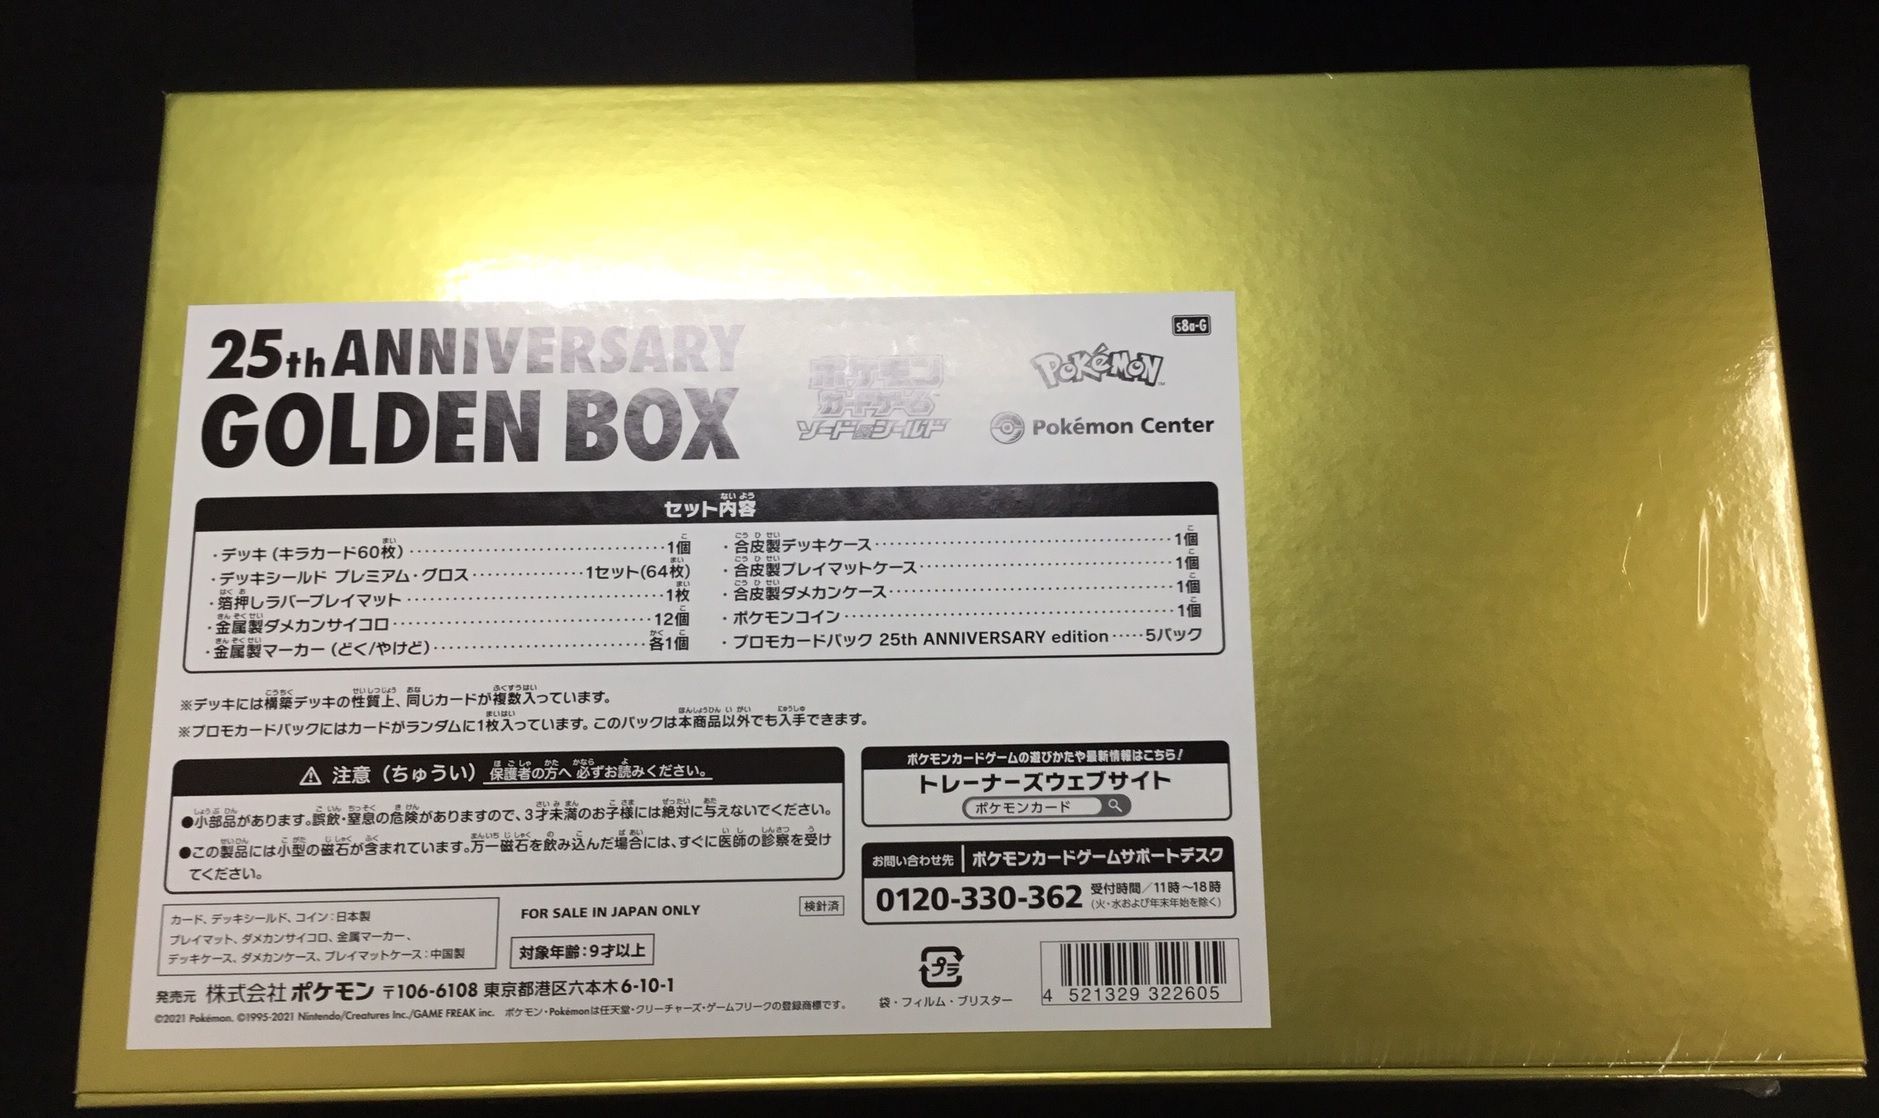 【納品書付】25th ANNIVERSARY GOLDEN BOX 未開封品ピカチュウ